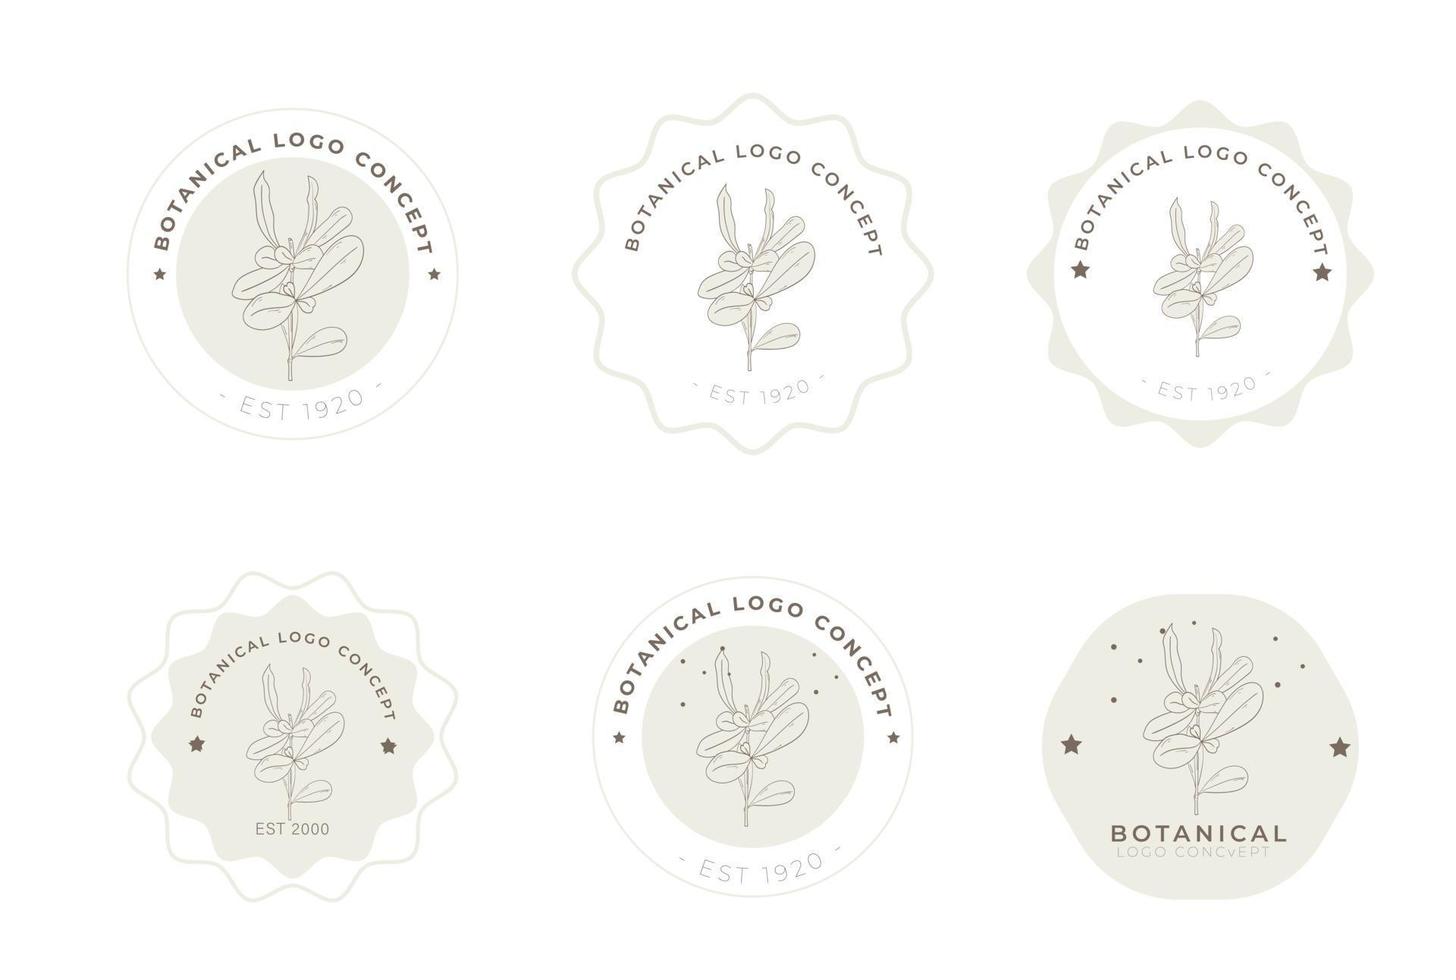 paquete de logotipo de estilo retro miniaml botánico floral dibujado a mano vector